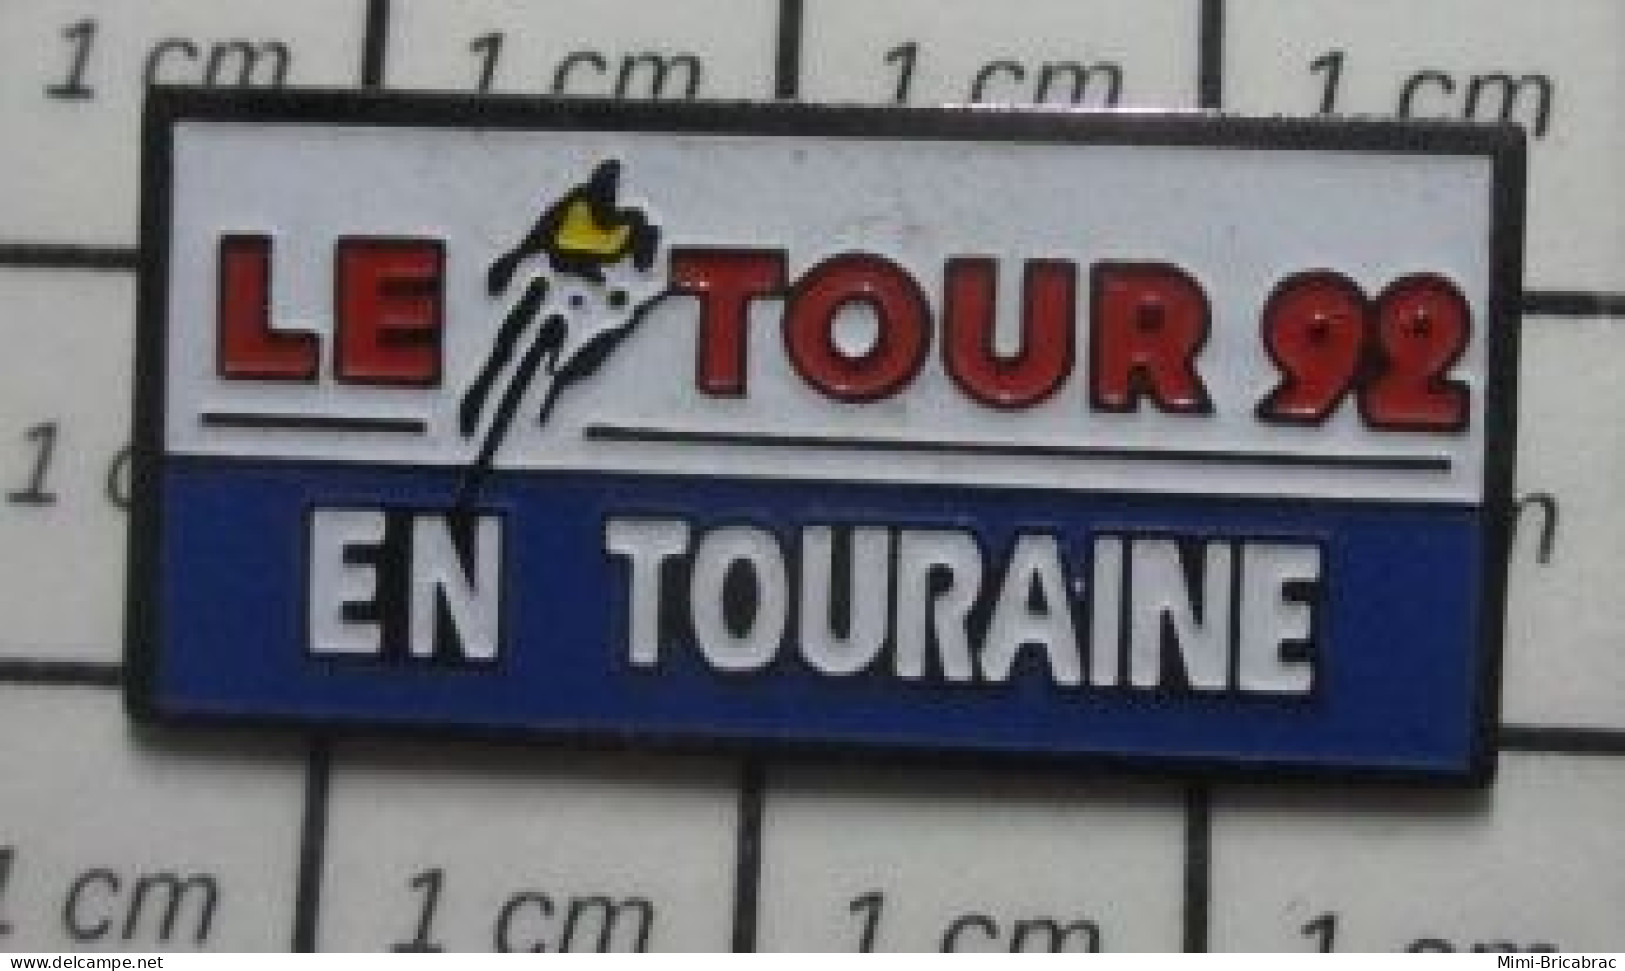 3417  Pin's Pins / Beau Et Rare / SPORTS / CYCLIMSE TOUR DE FRANCE 92 EN TOURAINE - Wielrennen